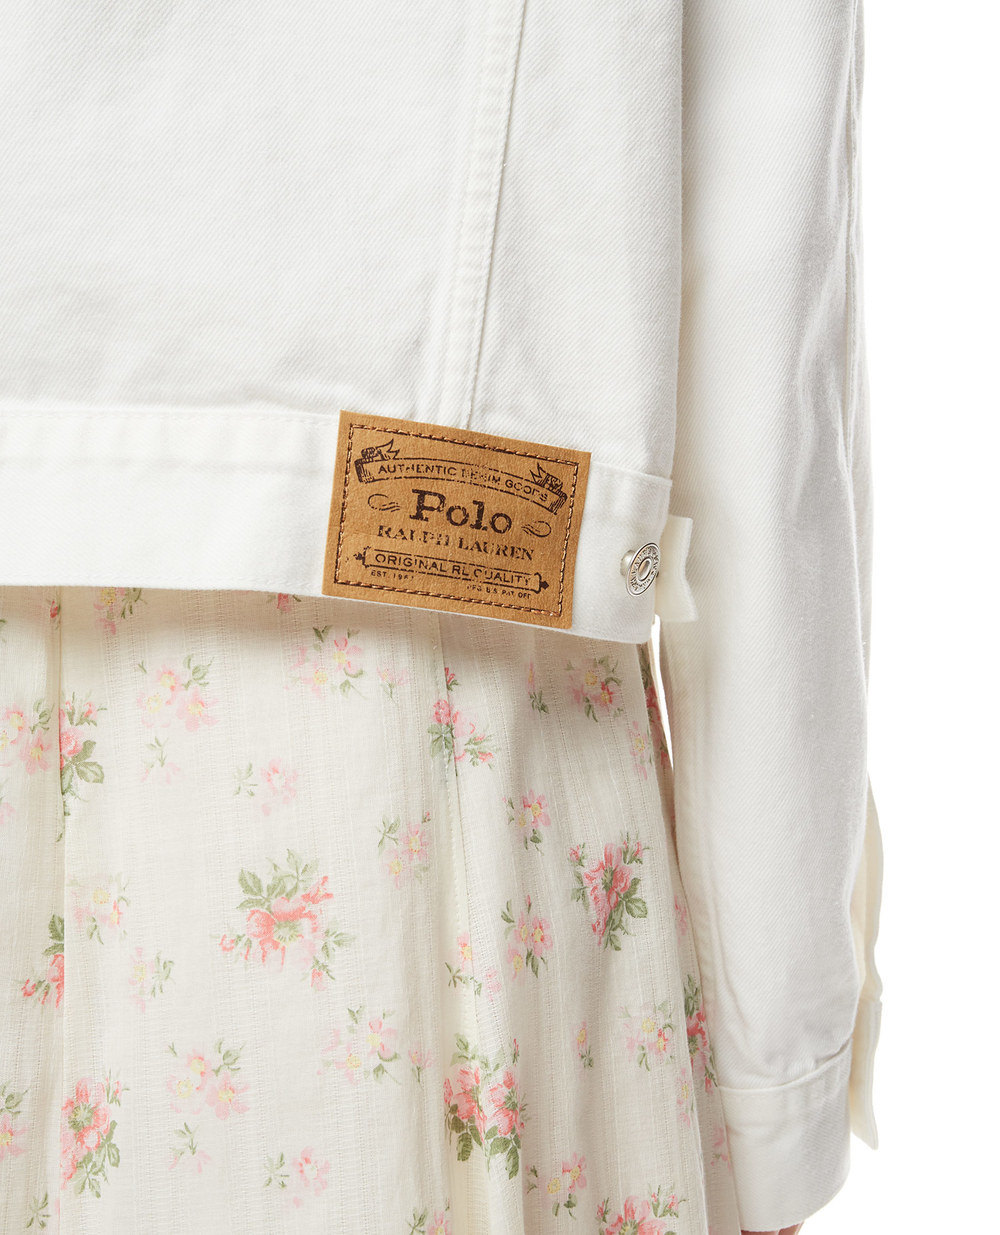 Джинсовая куртка Polo Ralph Lauren 211834028001, белый цвет • Купить в интернет-магазине Kameron